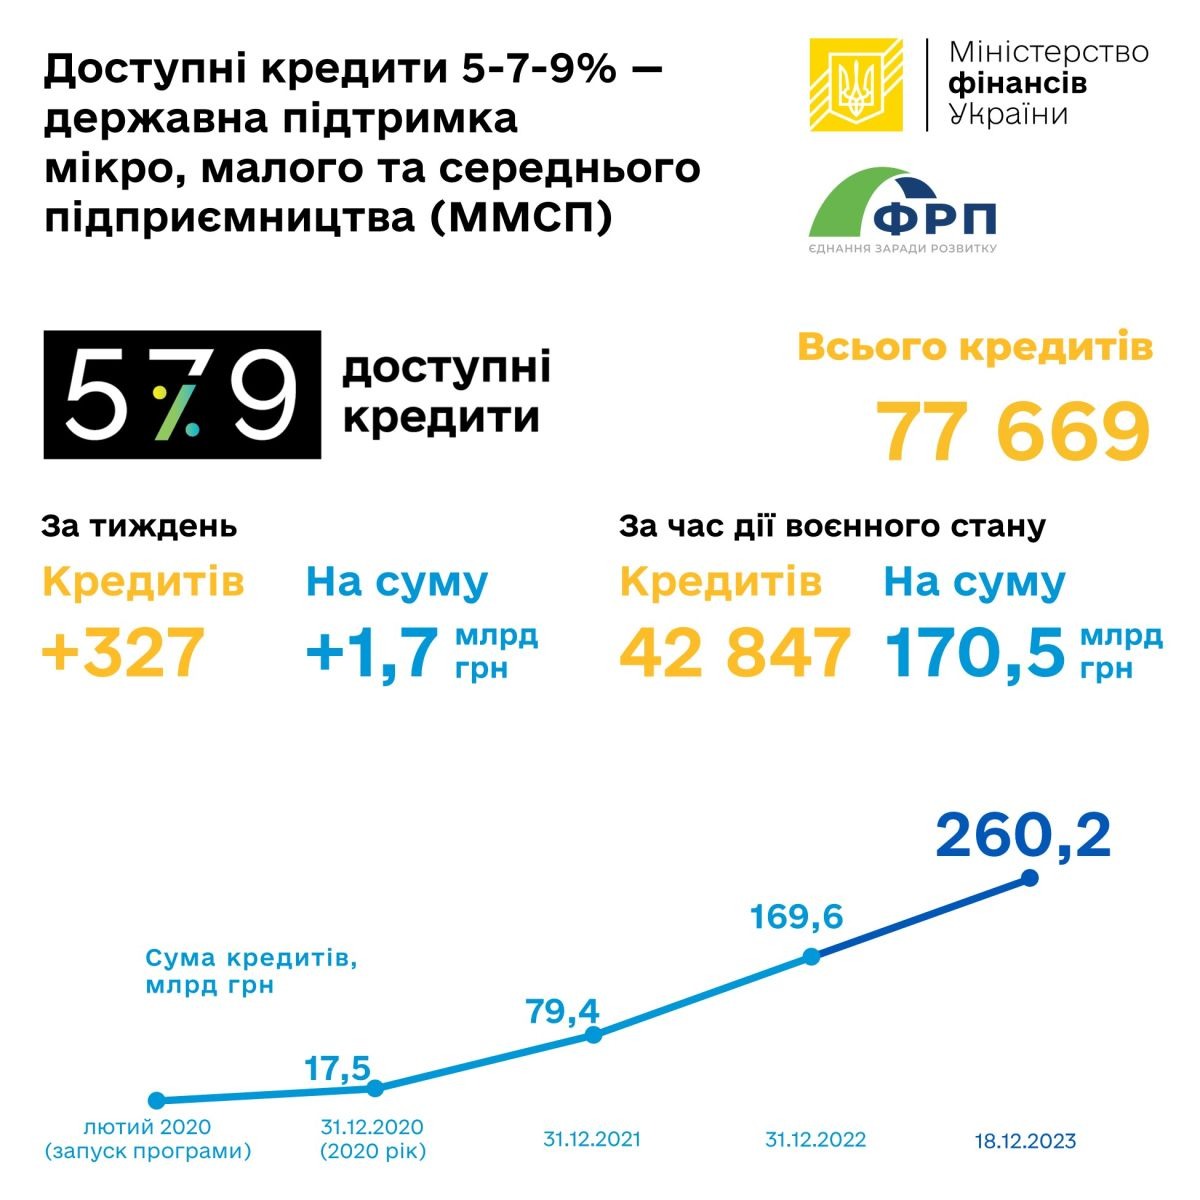 В течение действия военного положения по программе «Доступные кредиты 5-7-9%» выдано 170,5 миллиарда гривен ─ Минфин